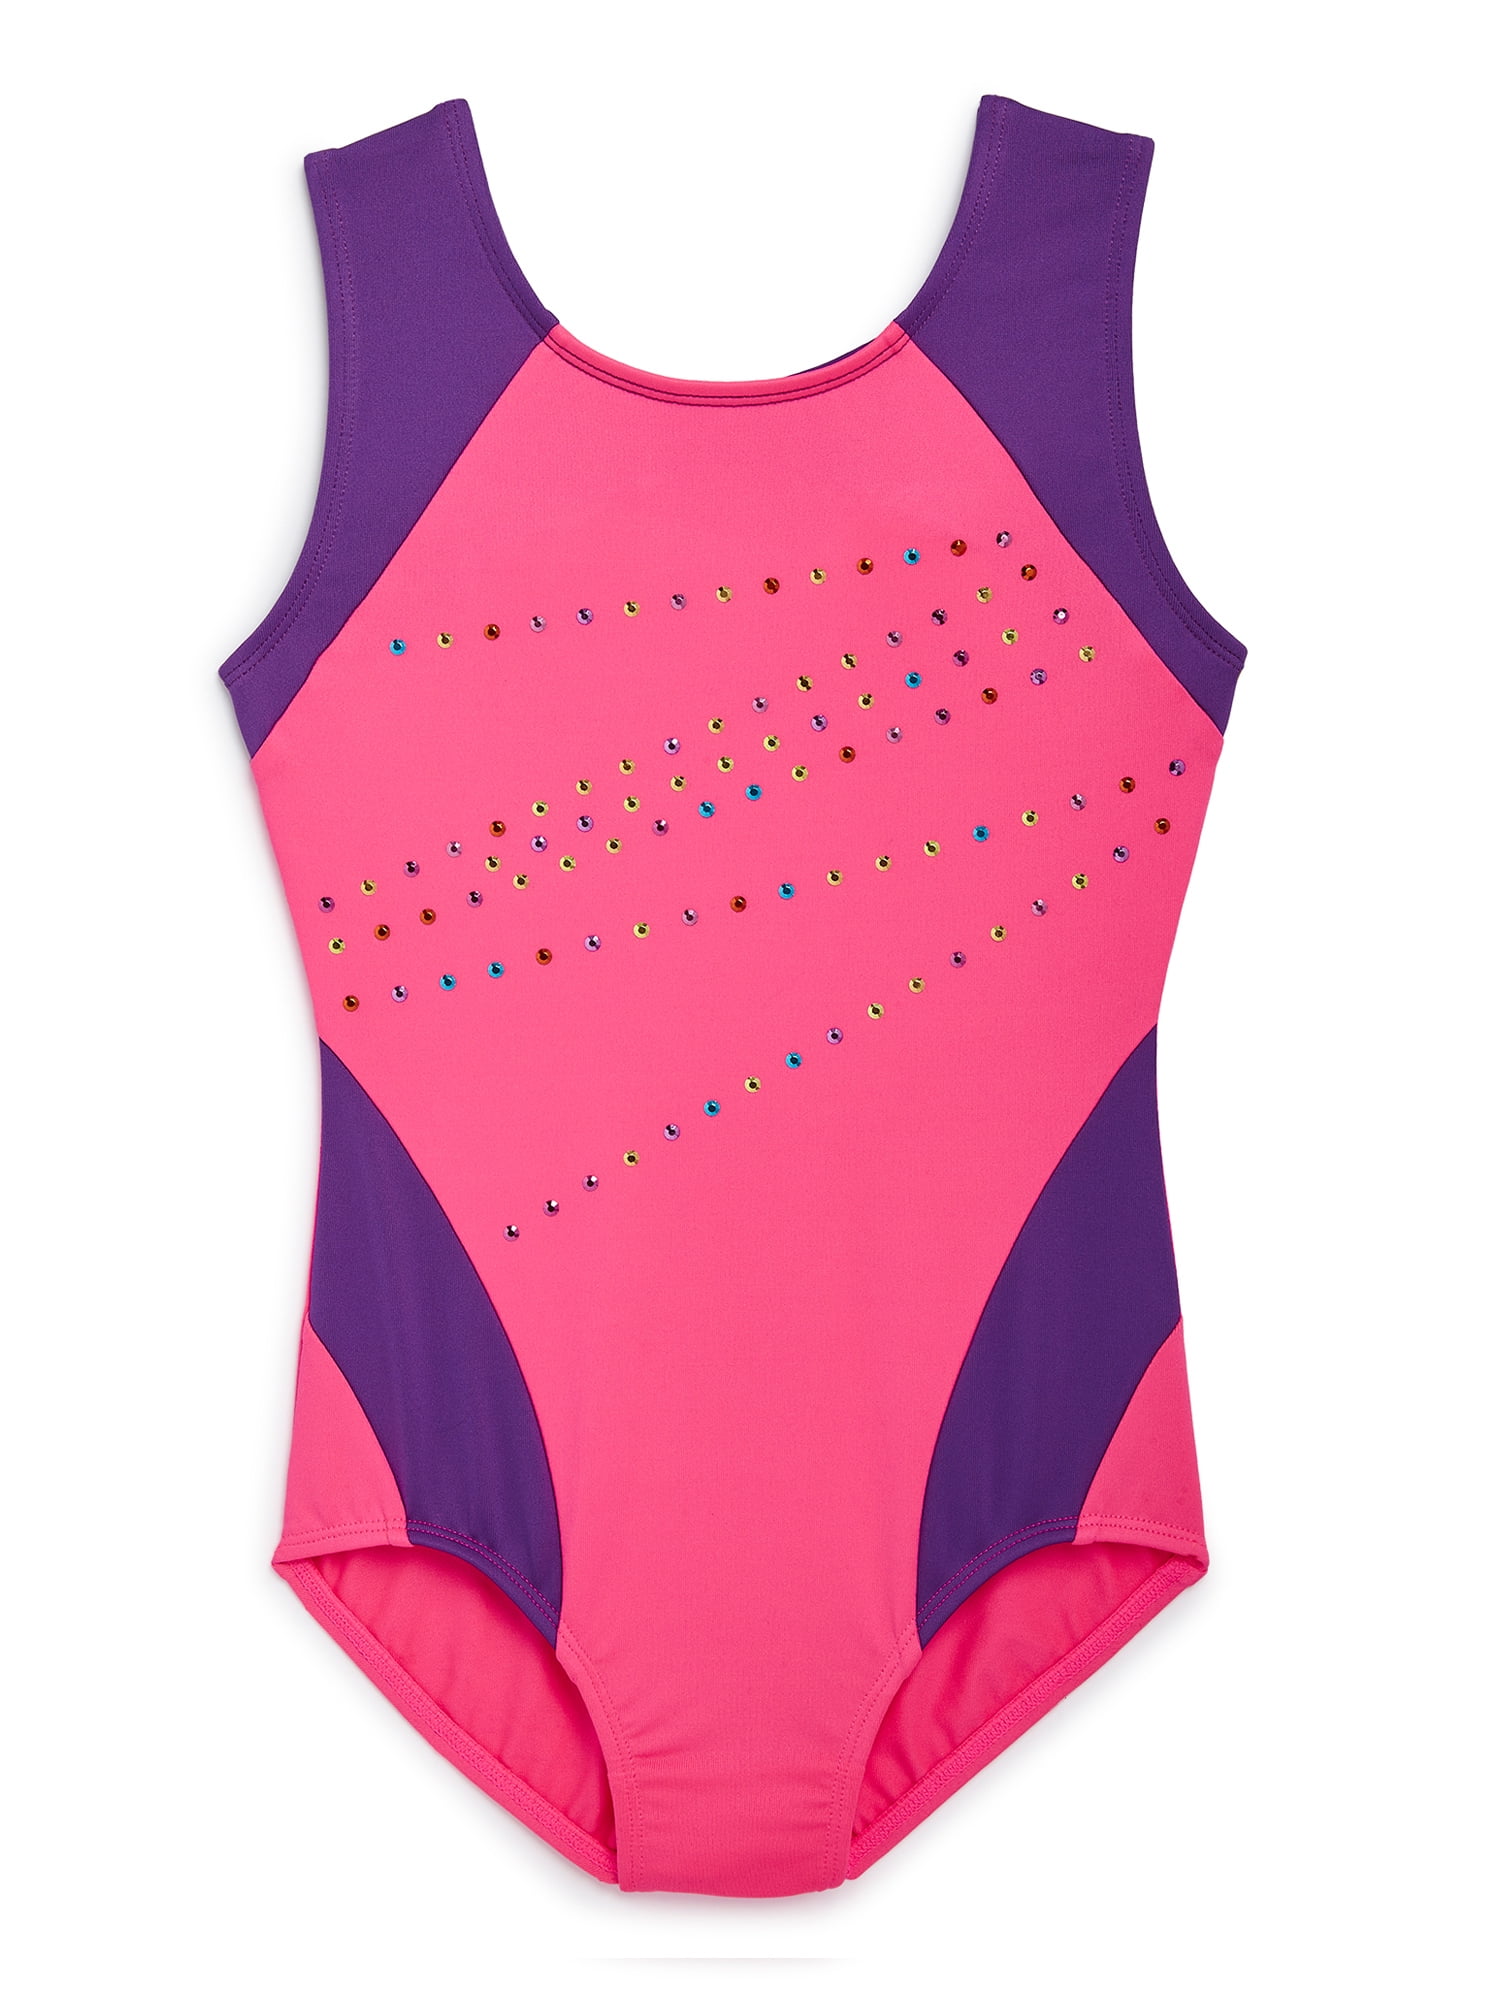 Nylon/Sparkly Foil Girls Gymnastics Long Sleeve Leotard Gym Dancewear Age 4-12 